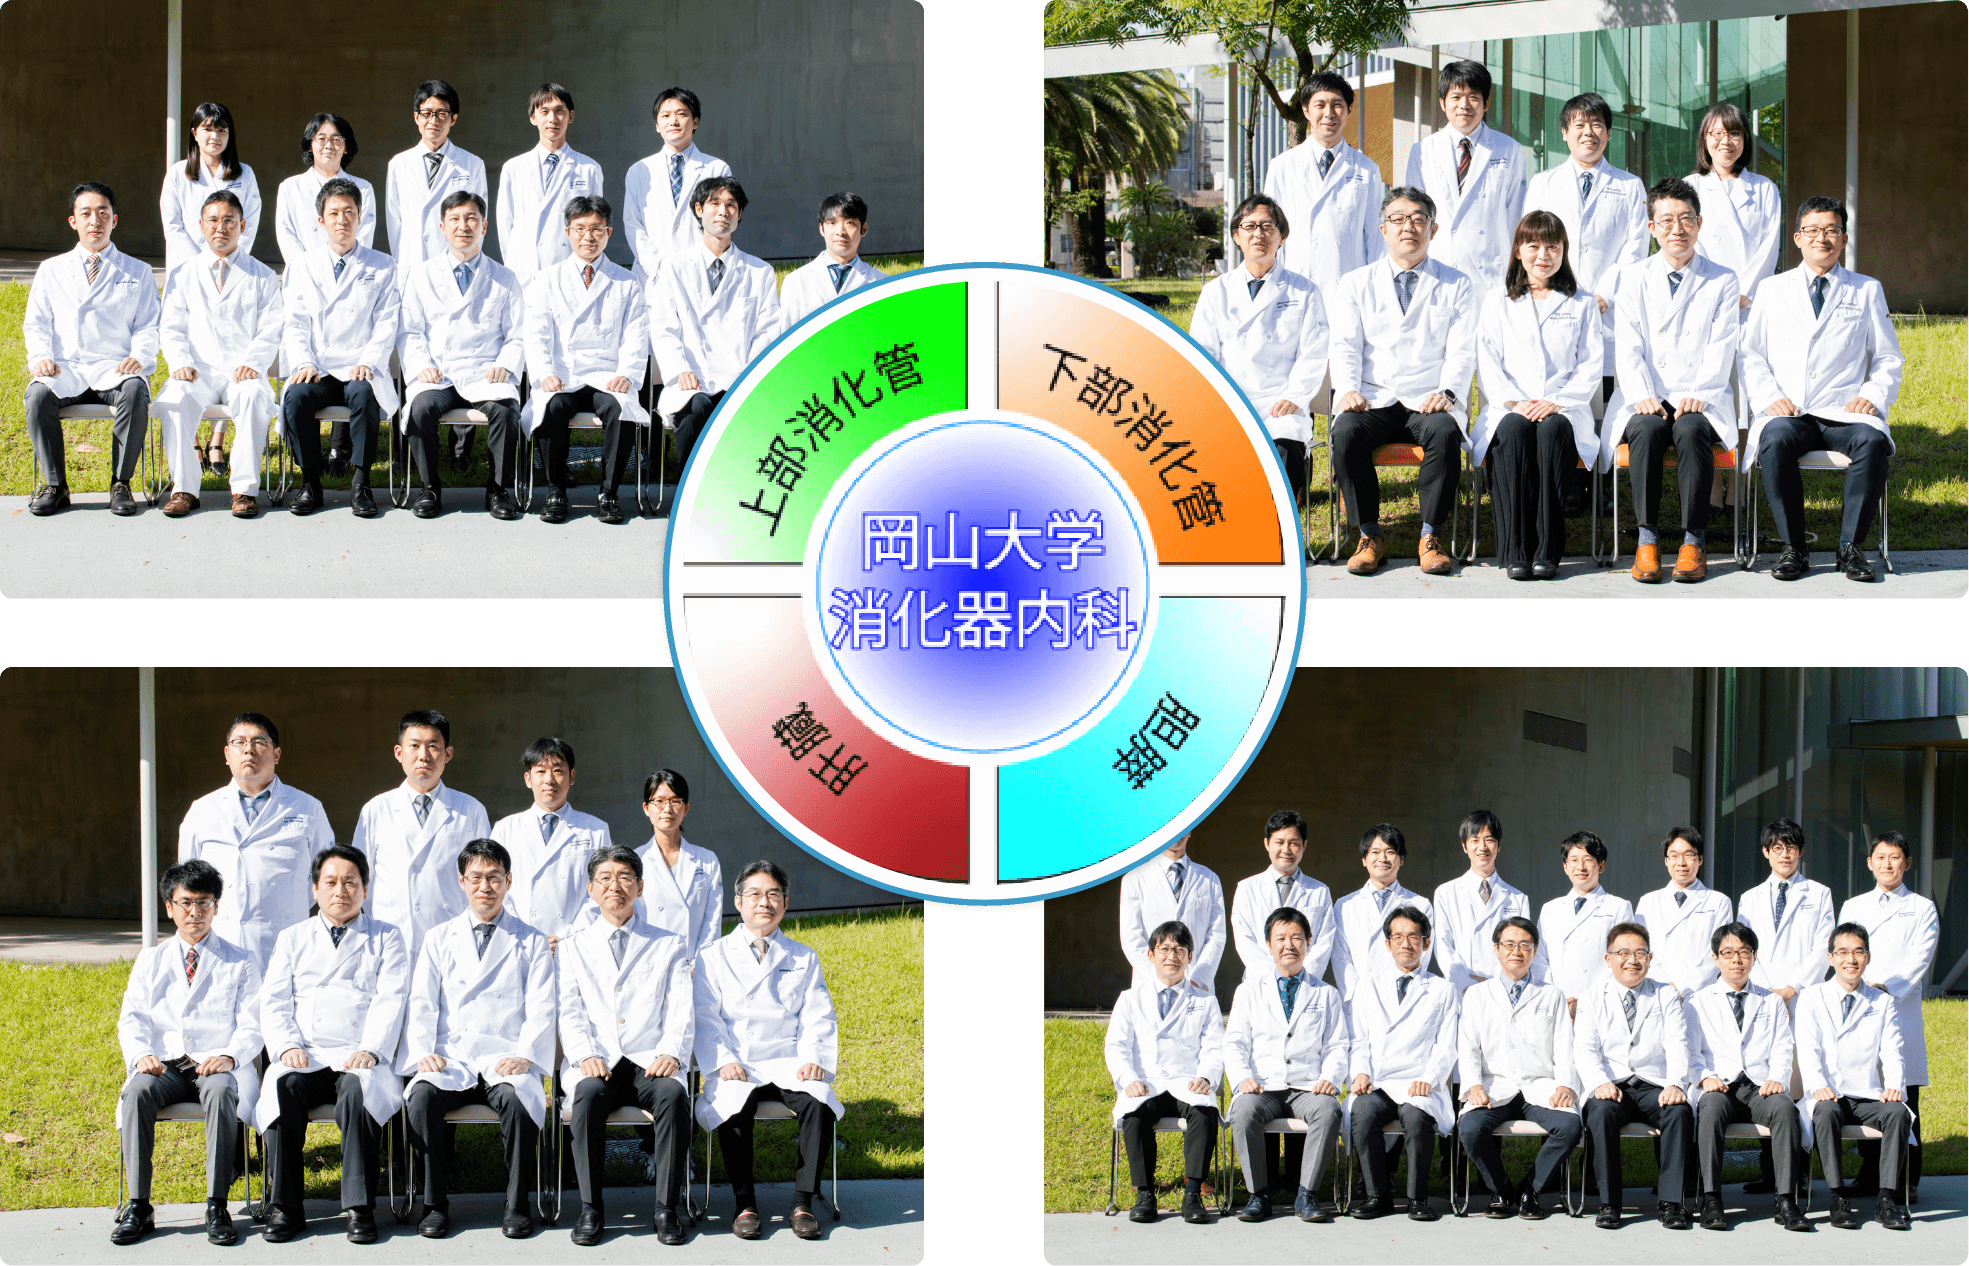 岡山大学消化器内科の各グループの集合写真